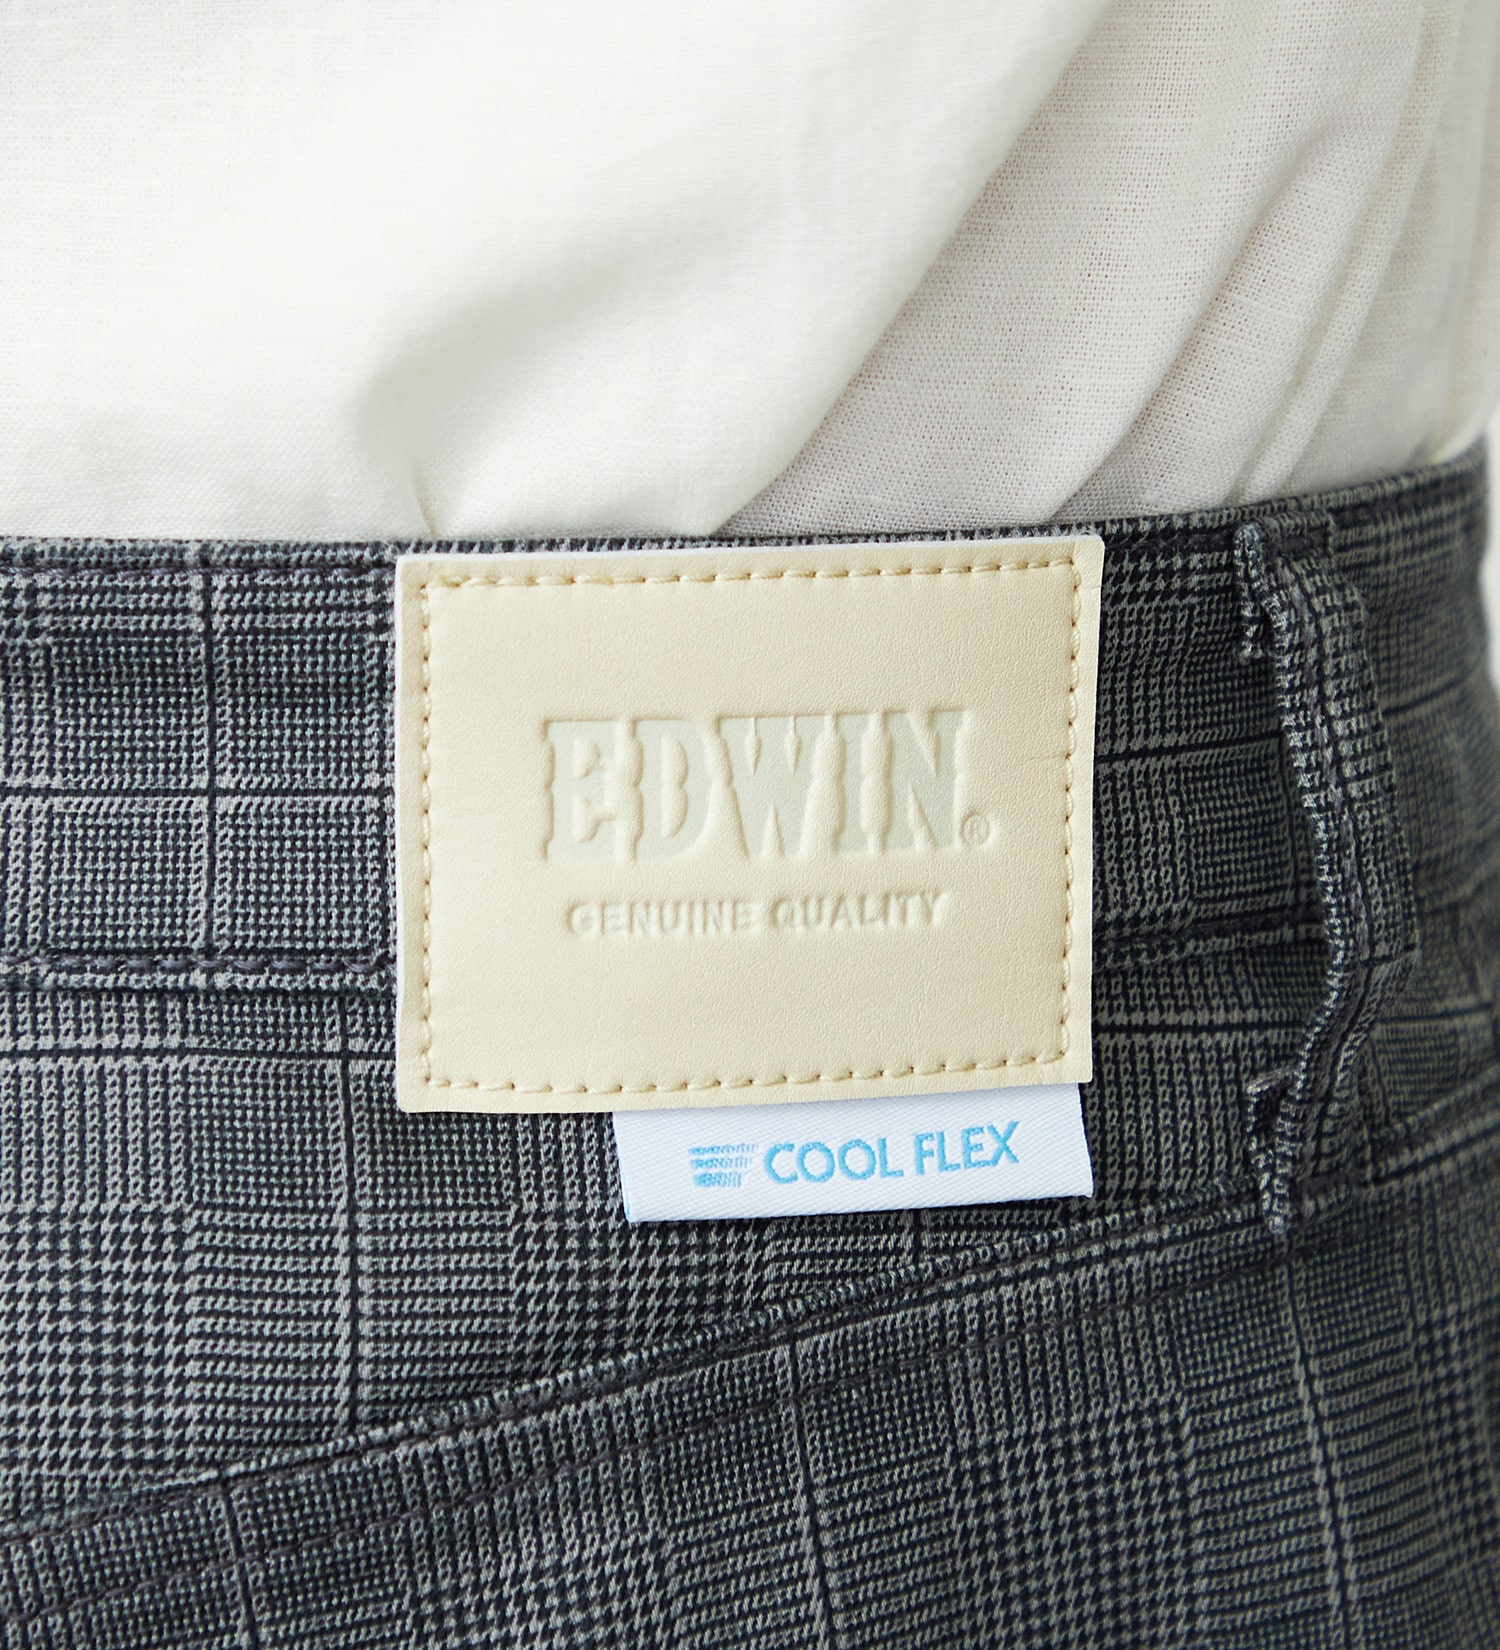 EDWIN(エドウイン)の【涼】EDWIN COOLFLEX 二重織メッシュ構造 レギュラーストレートパンツ 【ドライタッチ/吸汗速乾】|パンツ/パンツ/メンズ|チェック2